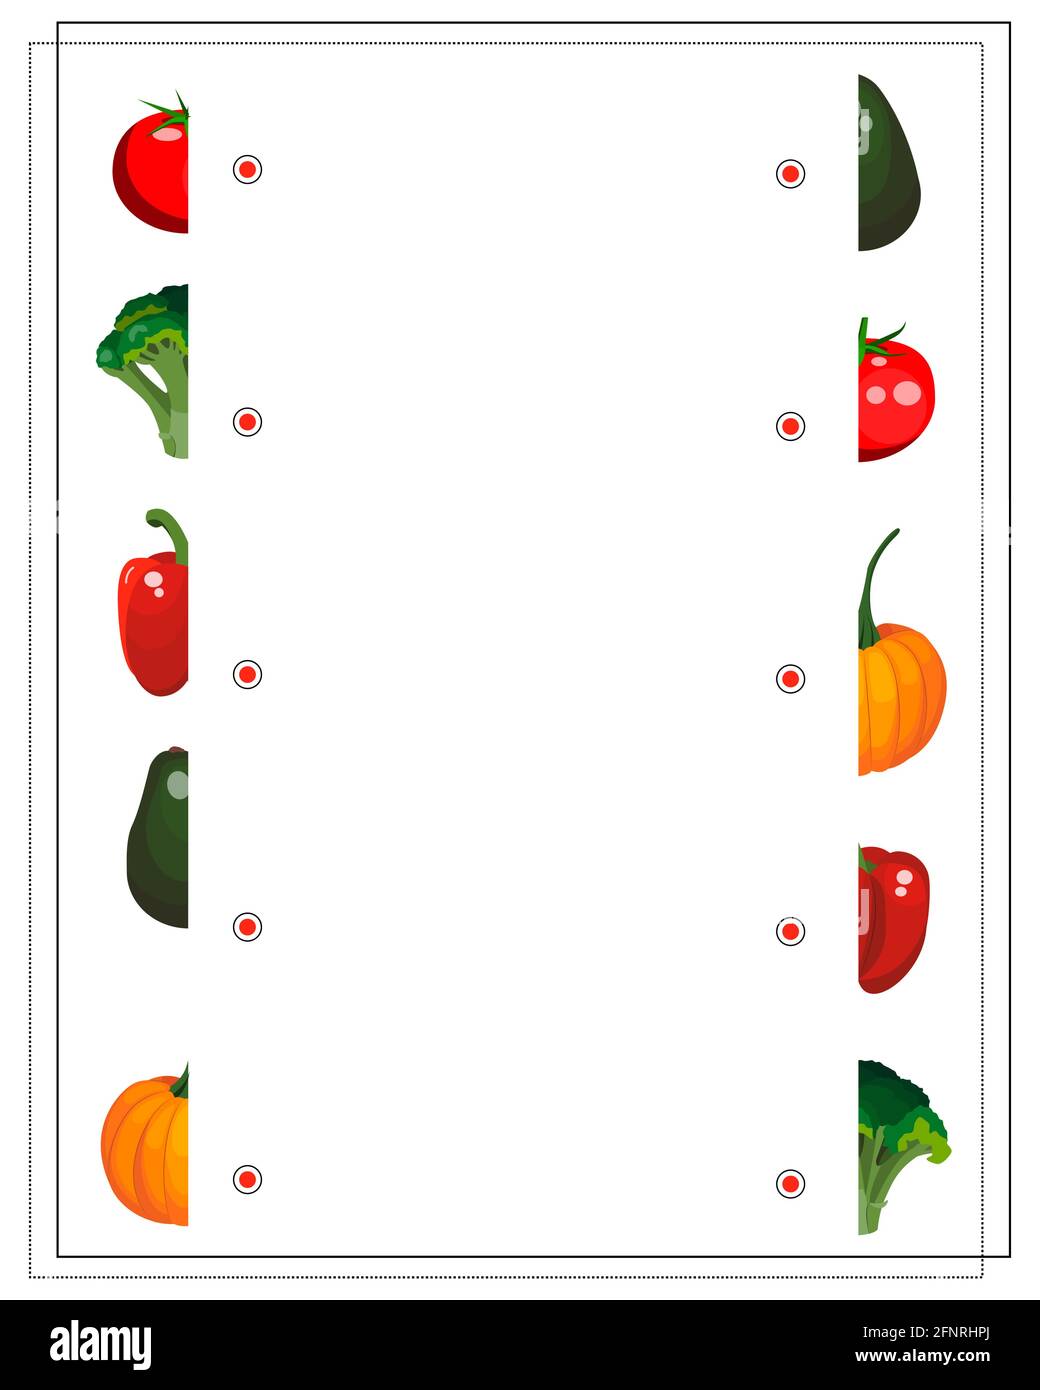 puzzle-Spiel für Kinder, wählen Sie die richtige Hälfte, Gemüse Tomaten, Brokkoli, Pfeffer, Avocado, Kürbis. vektor auf weißem Hintergrund isoliert Stock Vektor